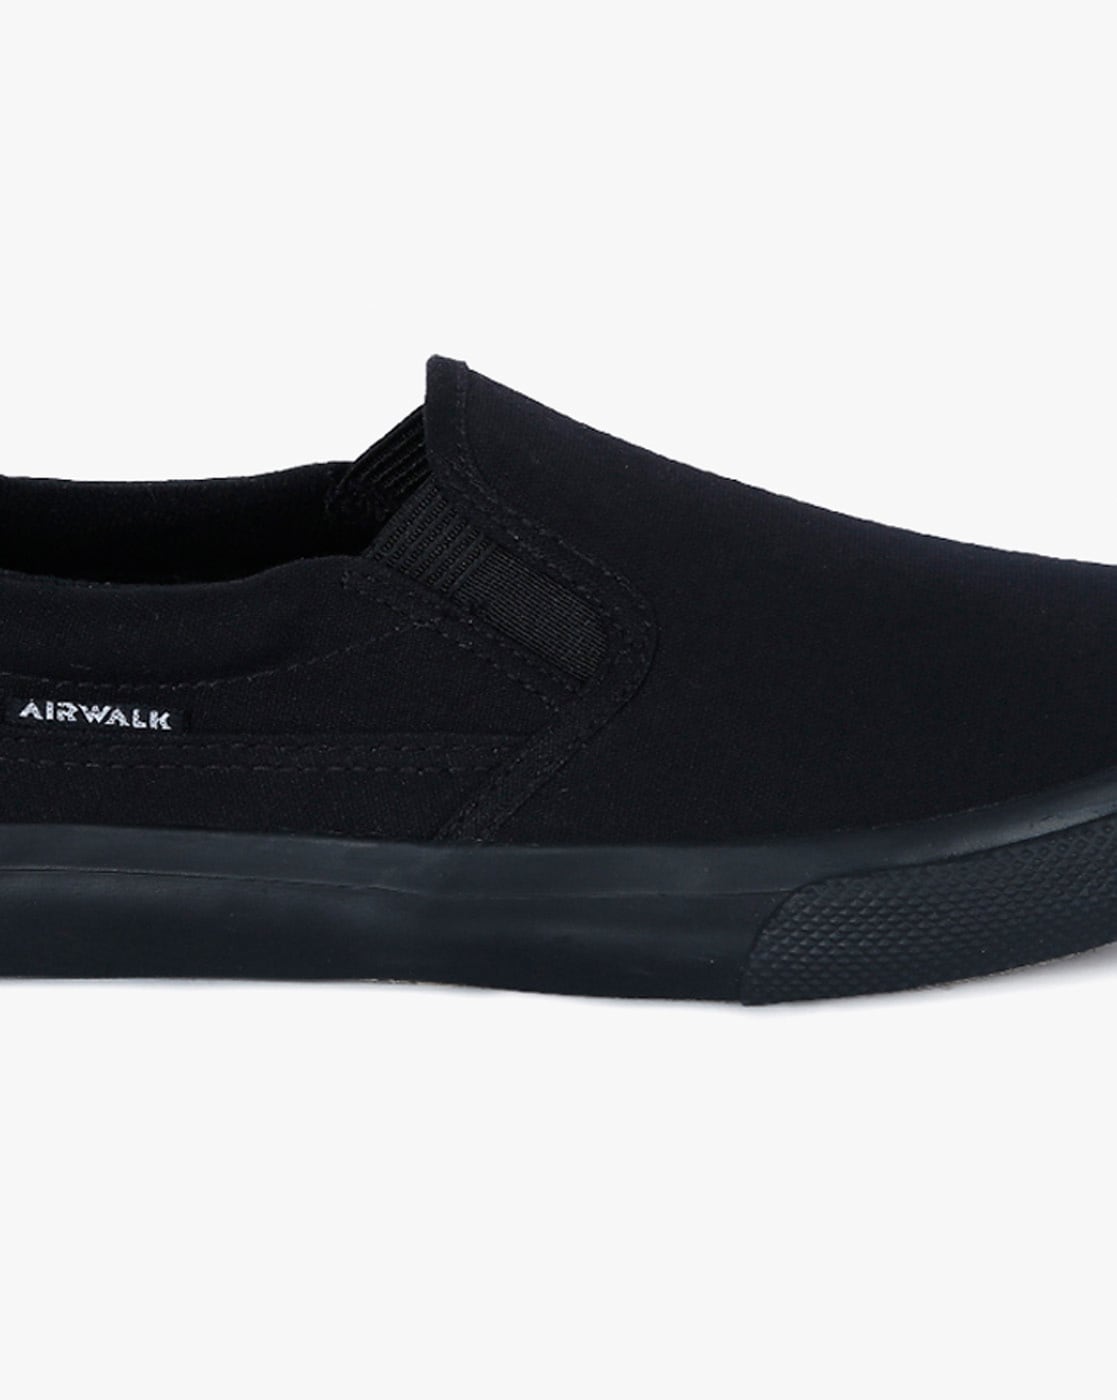 airwalk slip on black